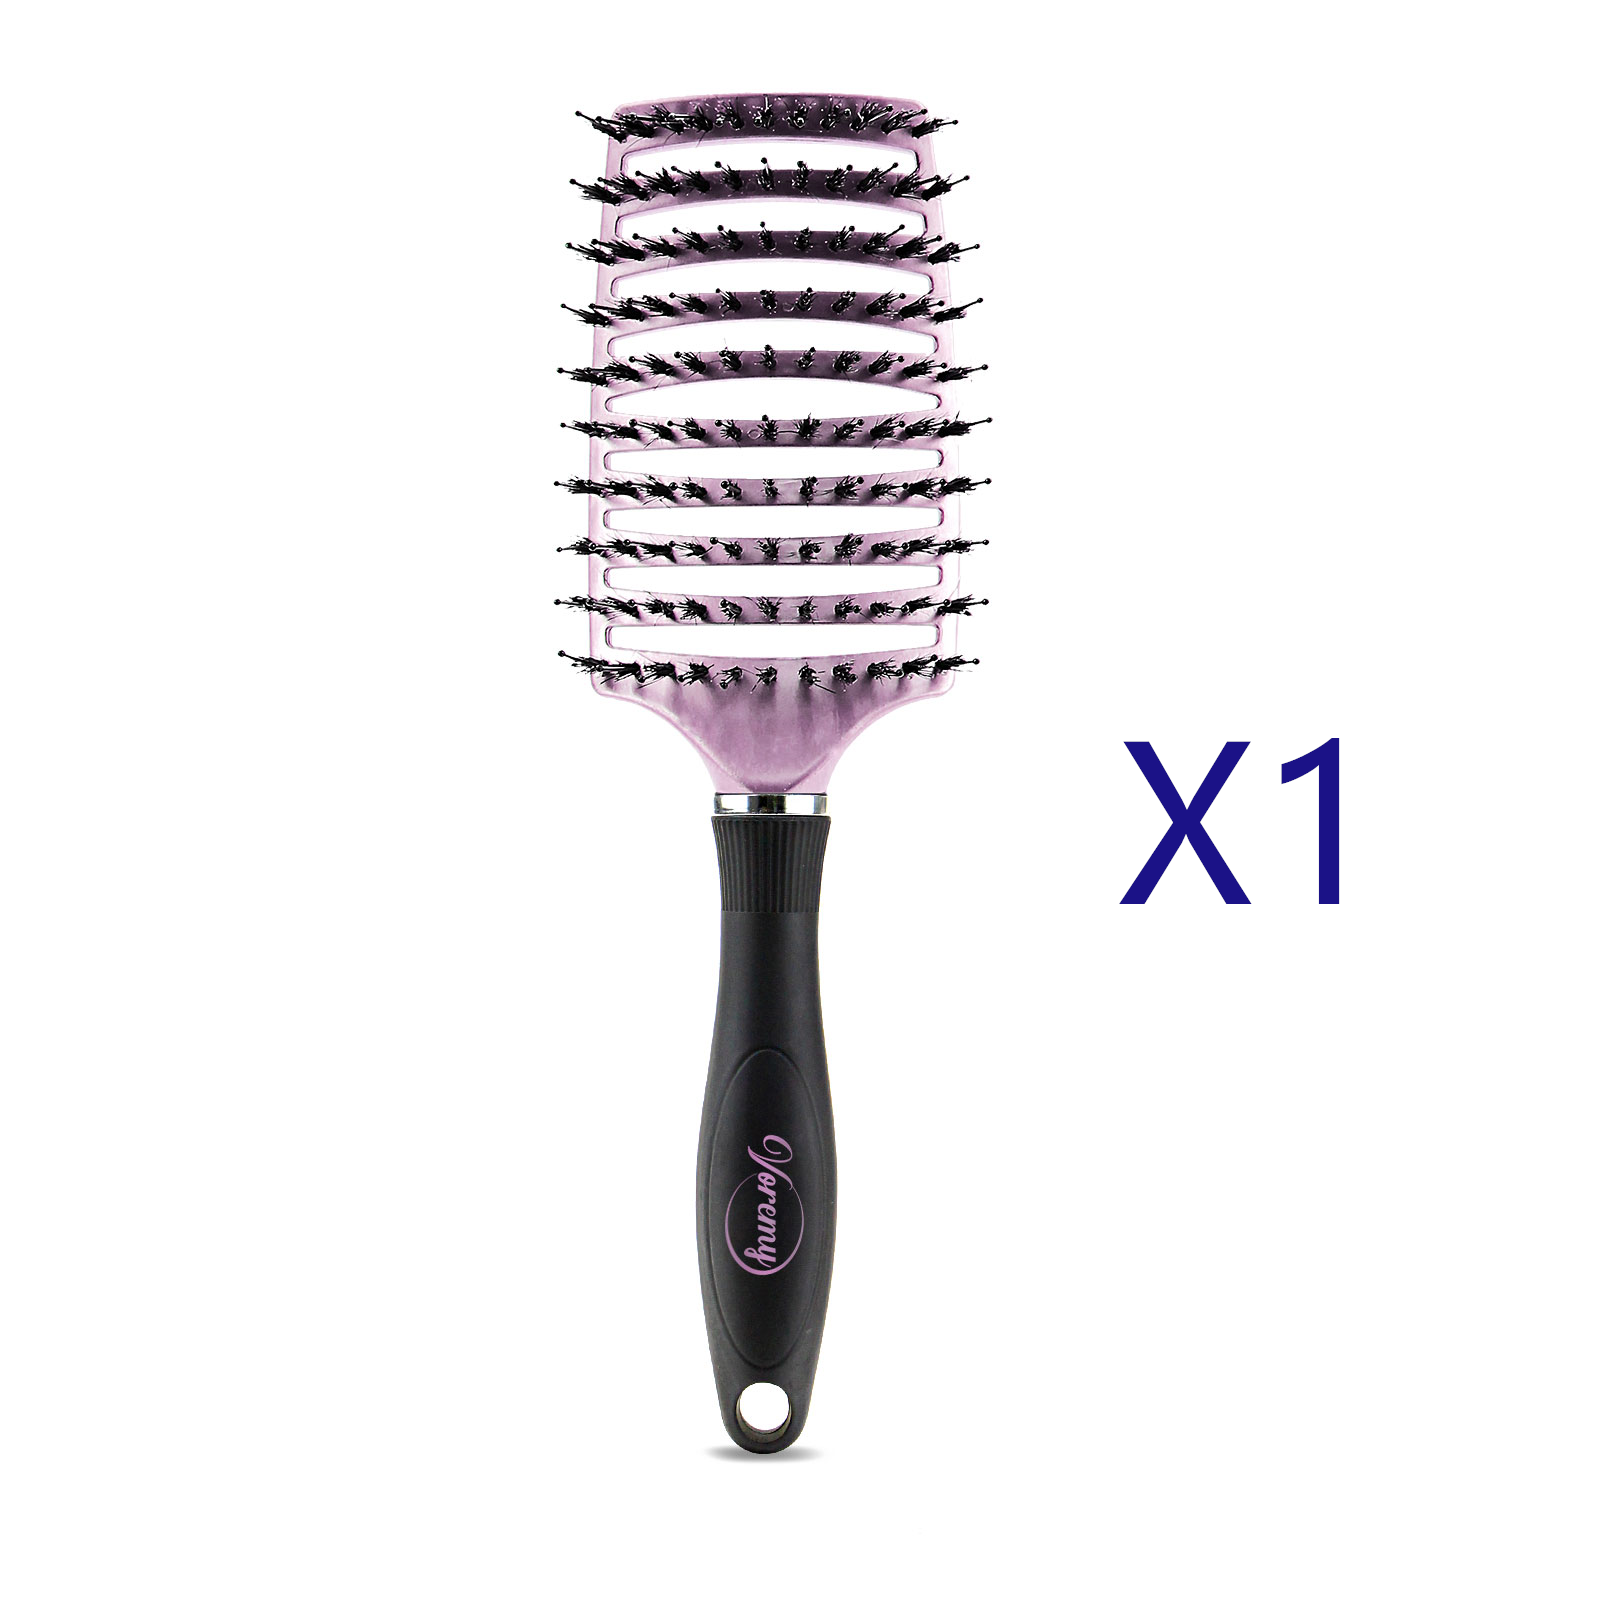 Hairbrush Anti Klit Brushy Haarborstel Women Detangler Hair Brush Bristle Nylon Scalp Massage Tangle Teaser Hair Brush Comb